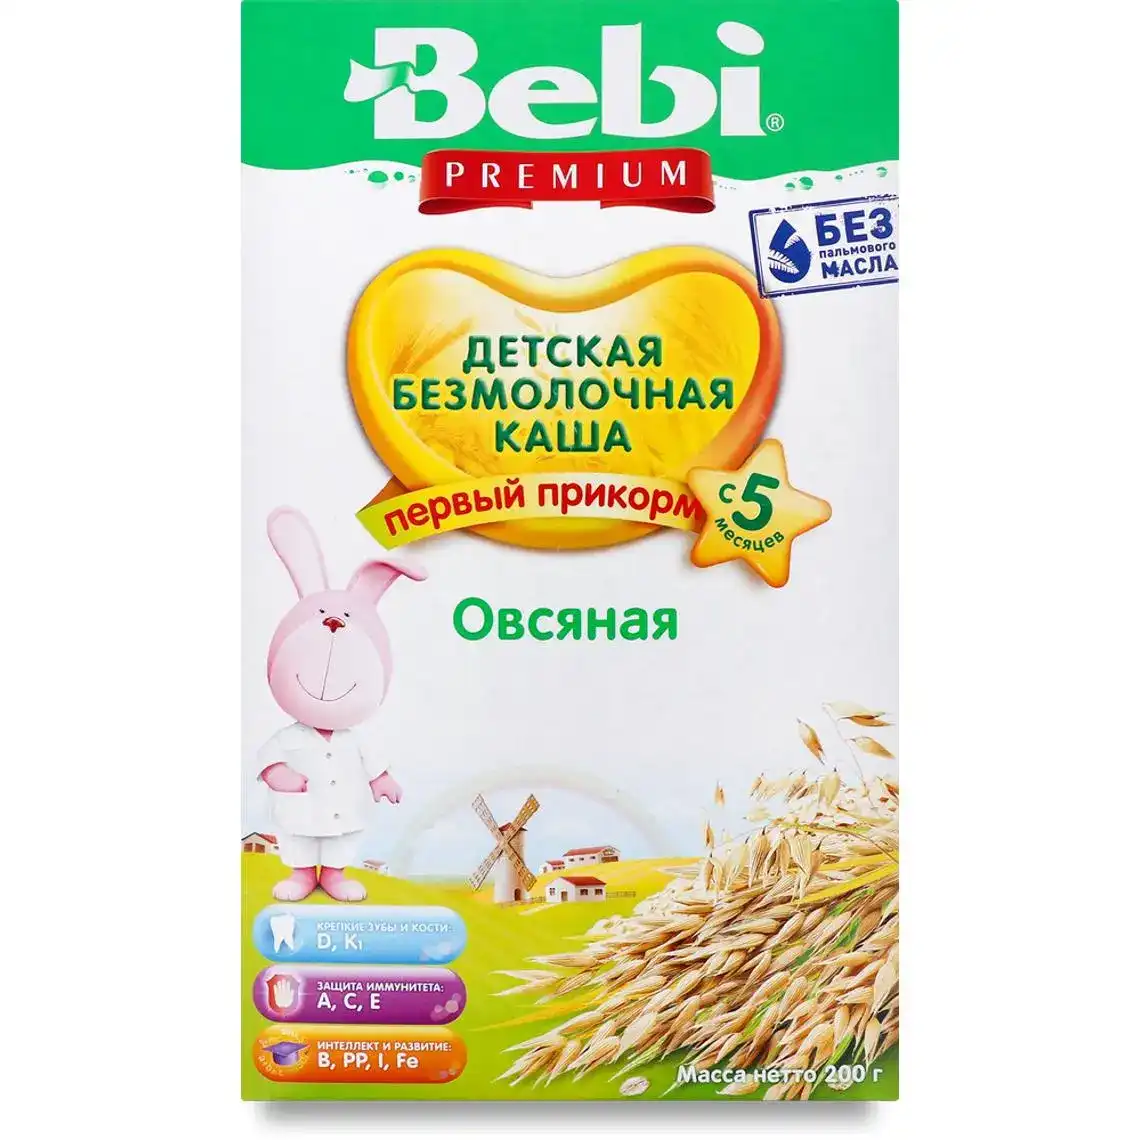 Дитяча каша Bebi Premium безмолочна Вівсяна з 5-ти місяців, 200 г